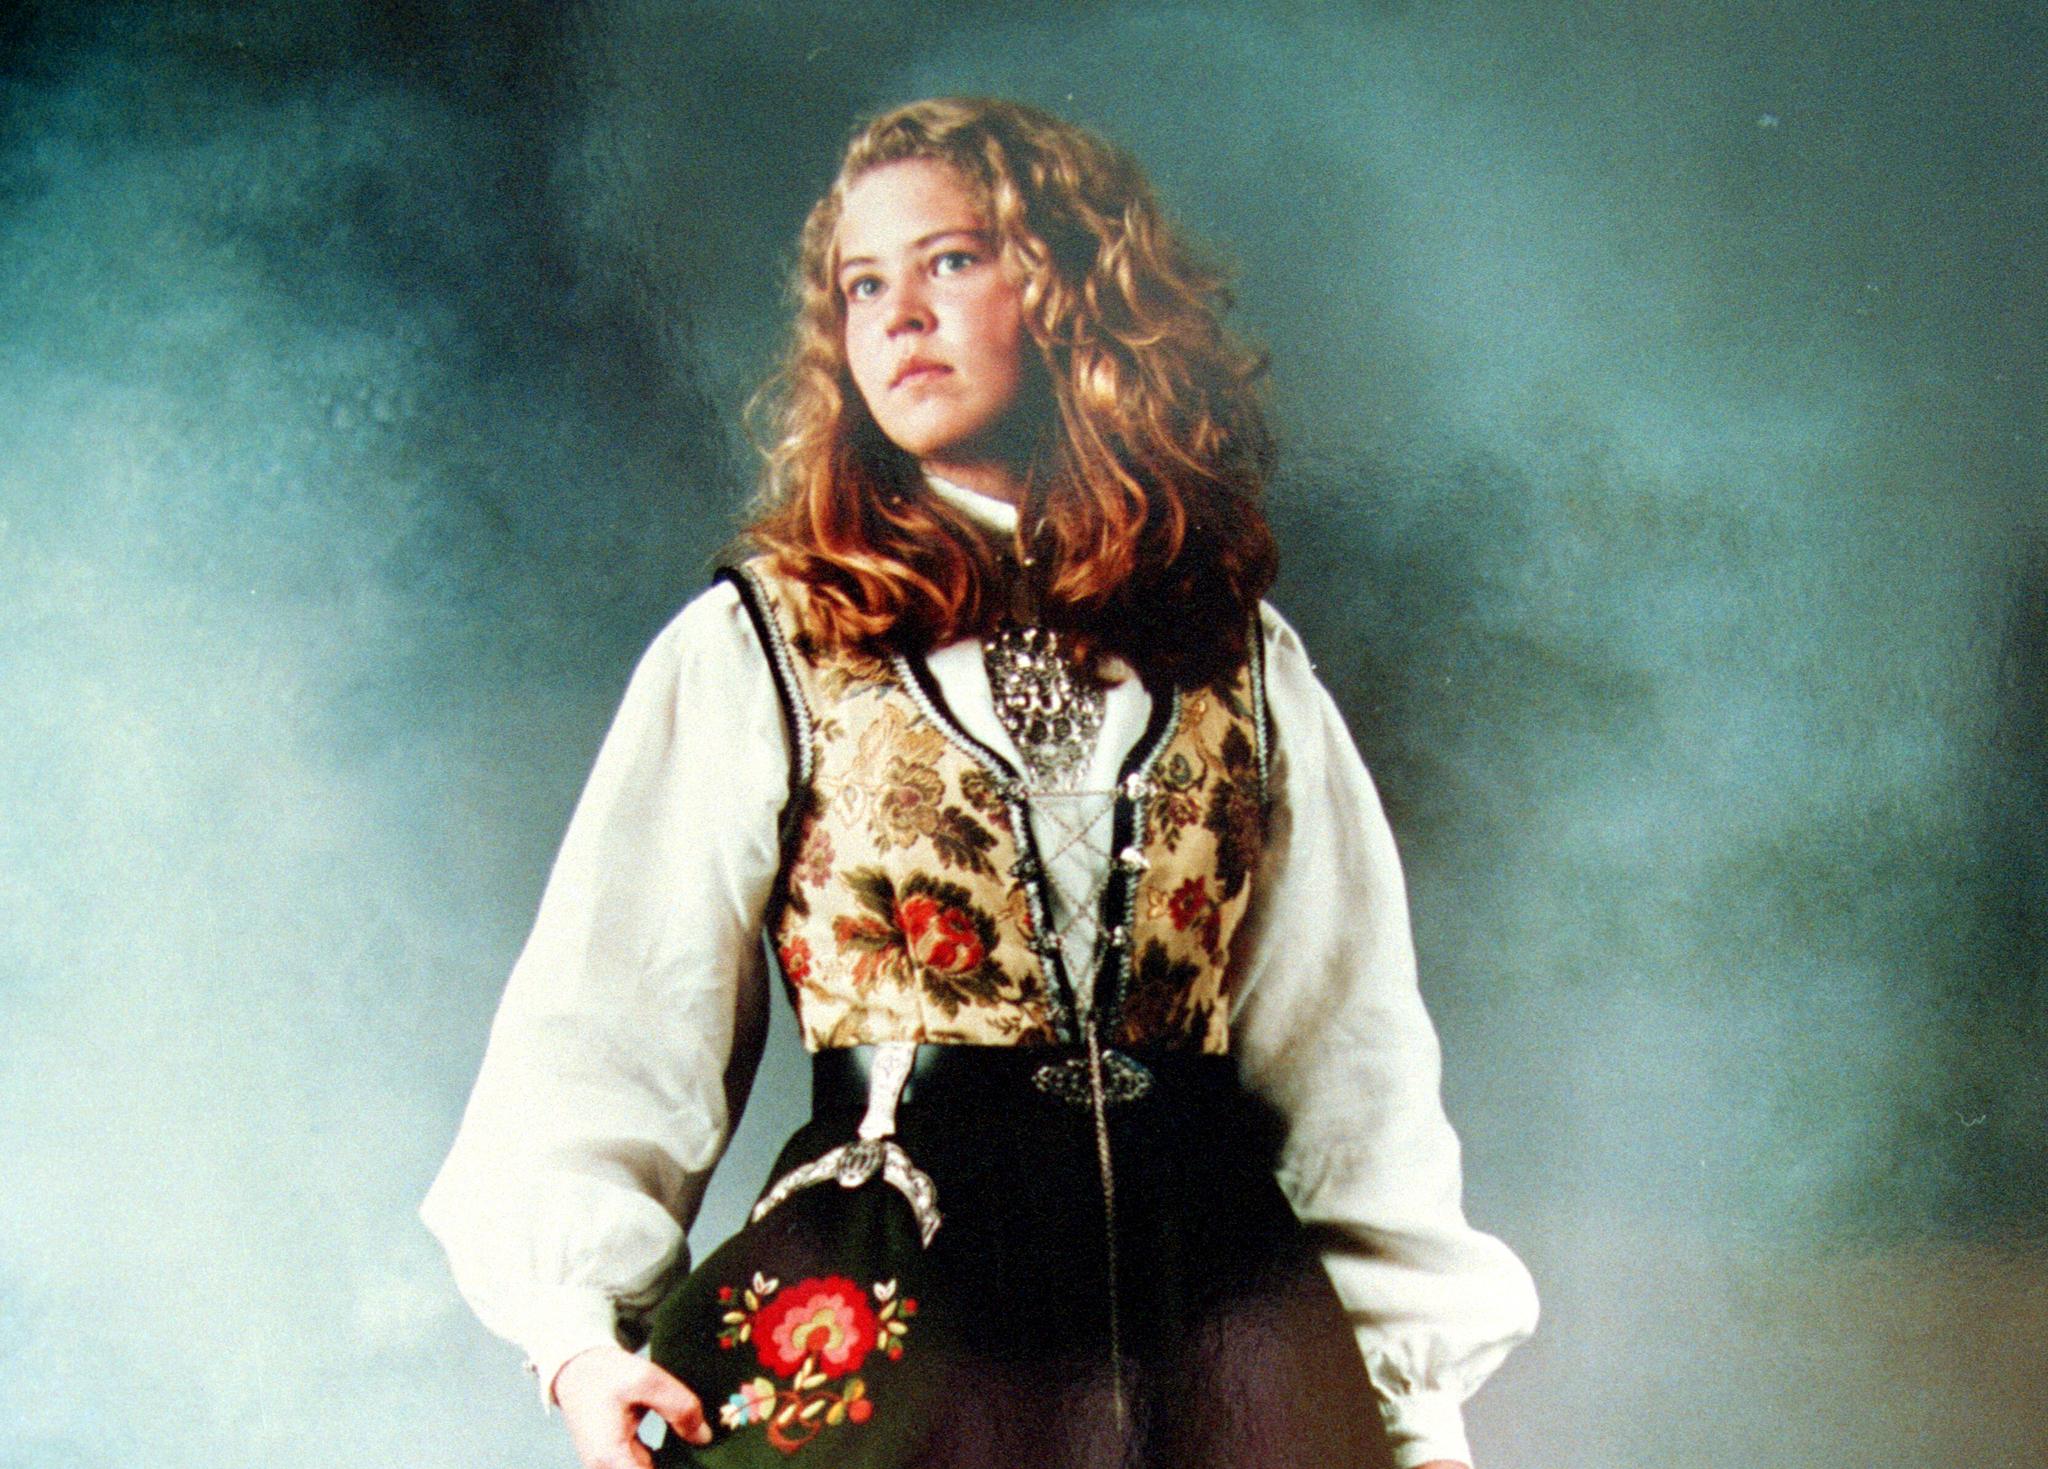 17 år gamle Birgitte Tengs ble drept i mai 1995. 